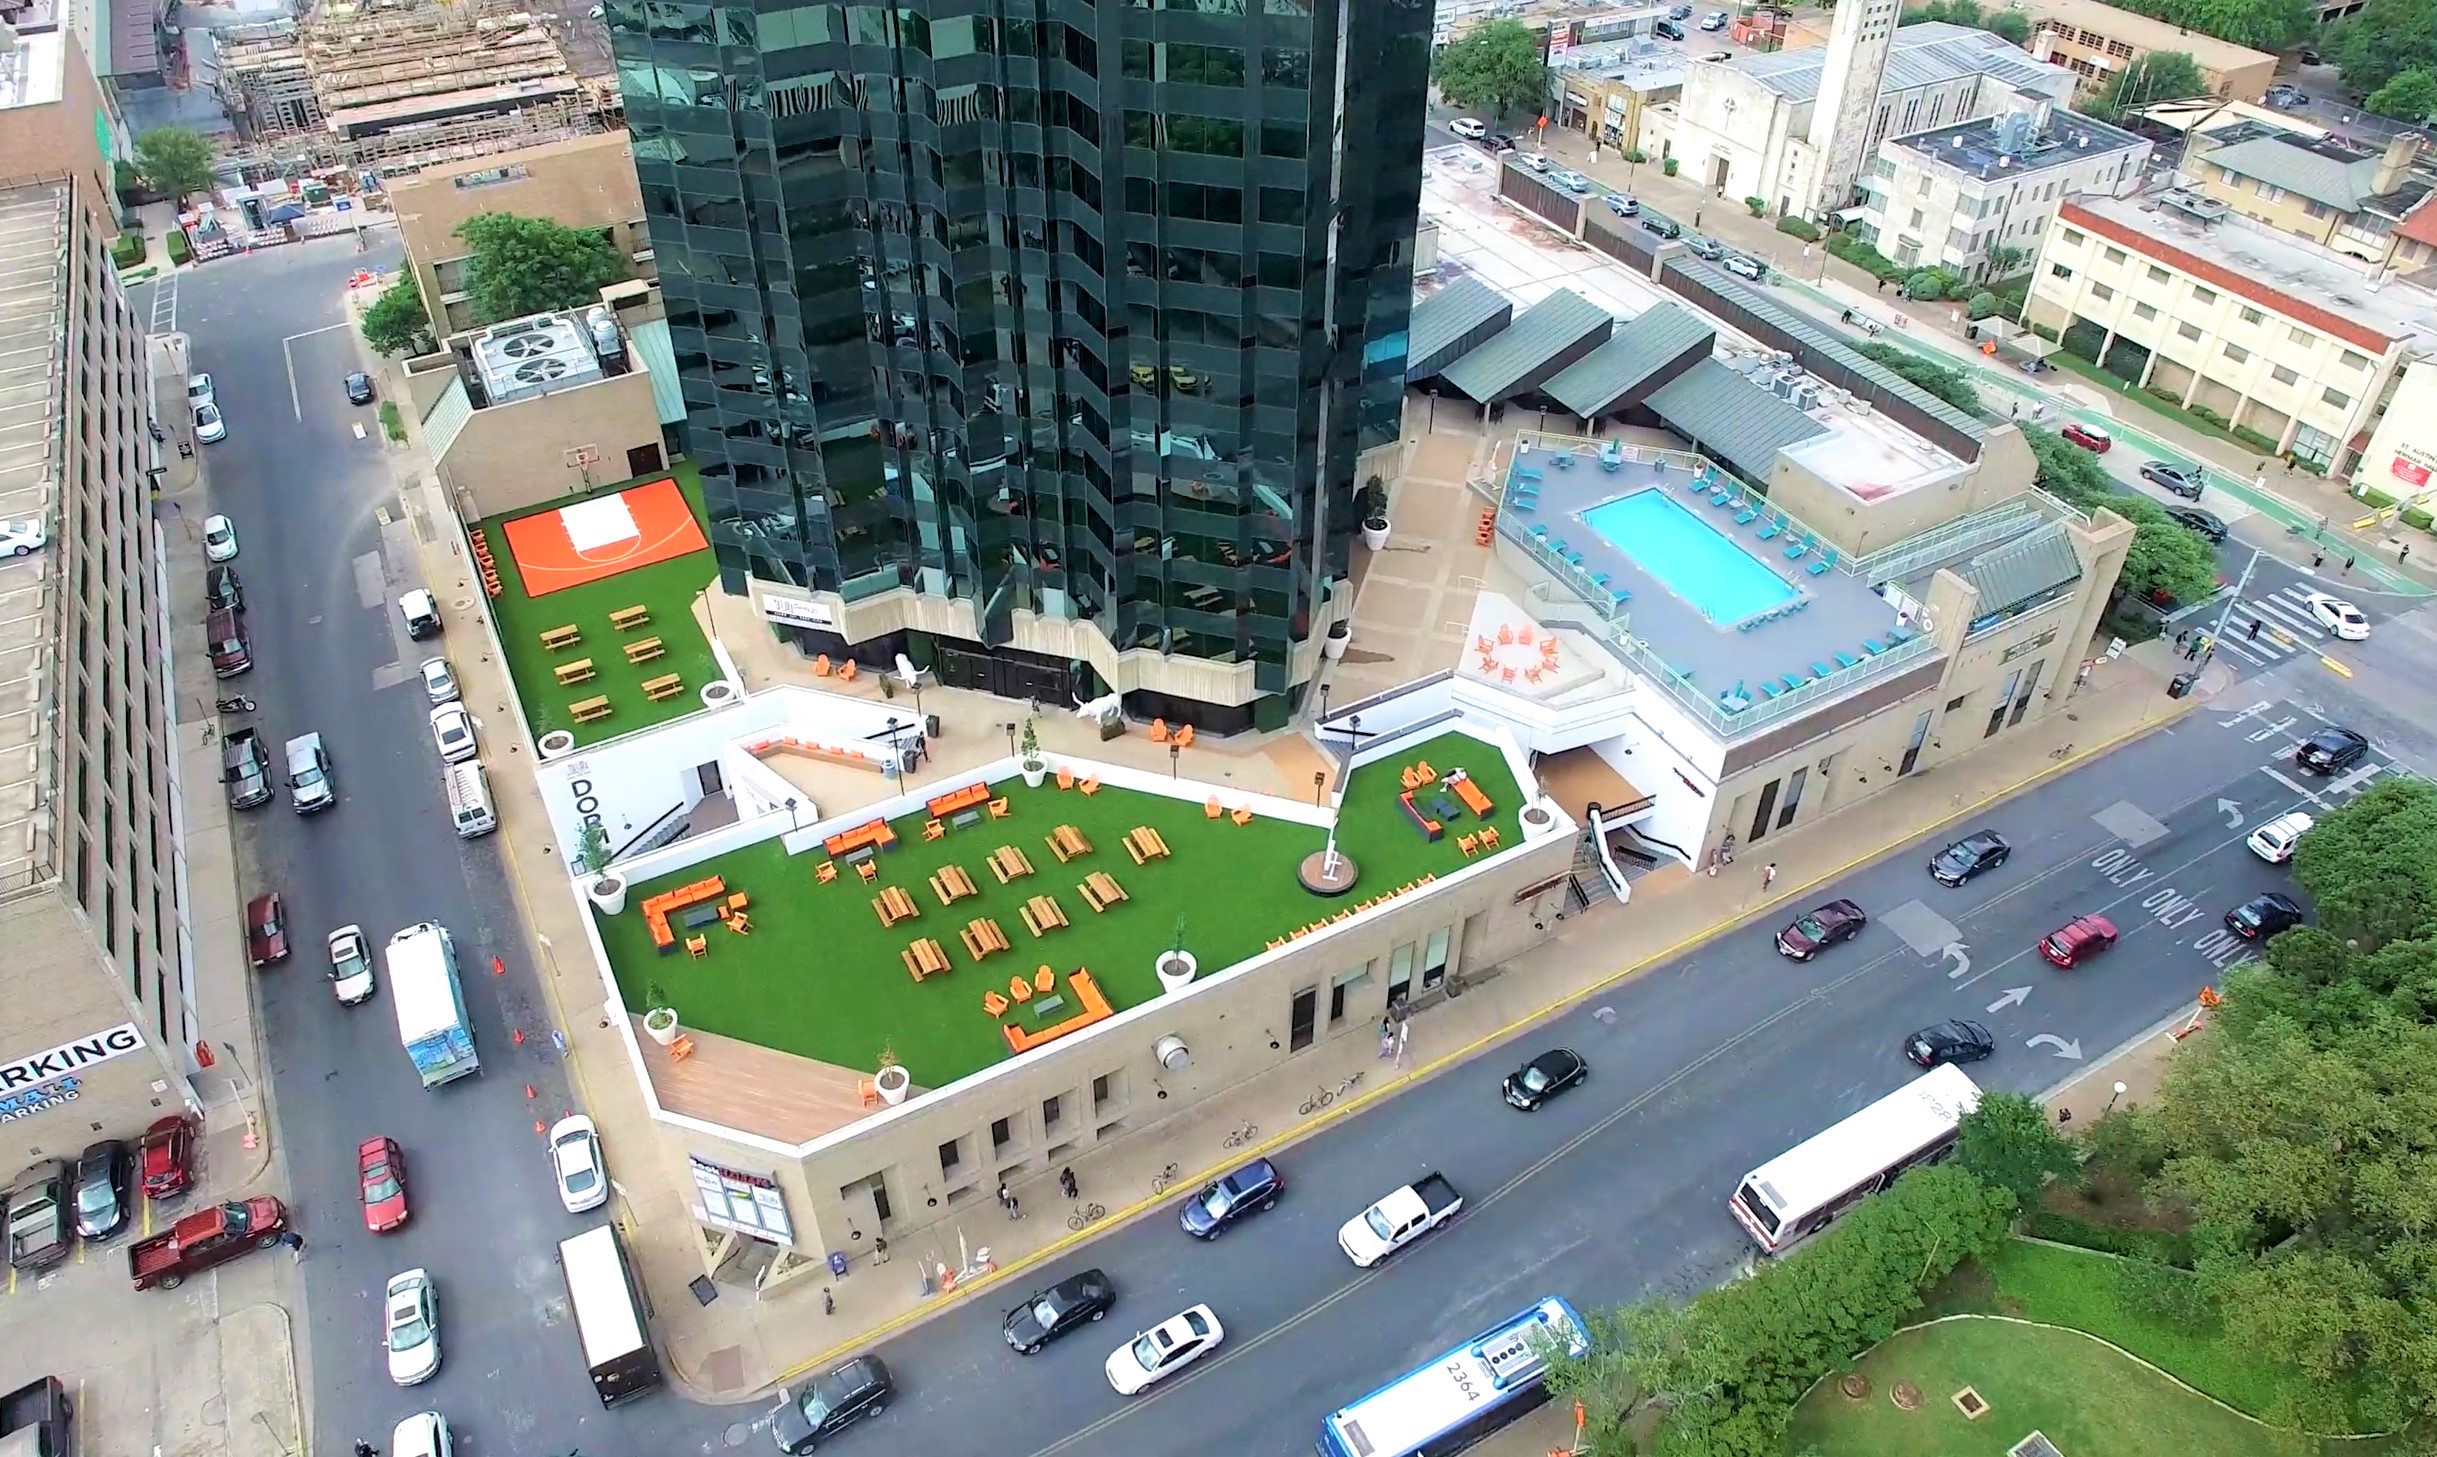 Aerial view of Dobie Twenty21 rooftop park and pool